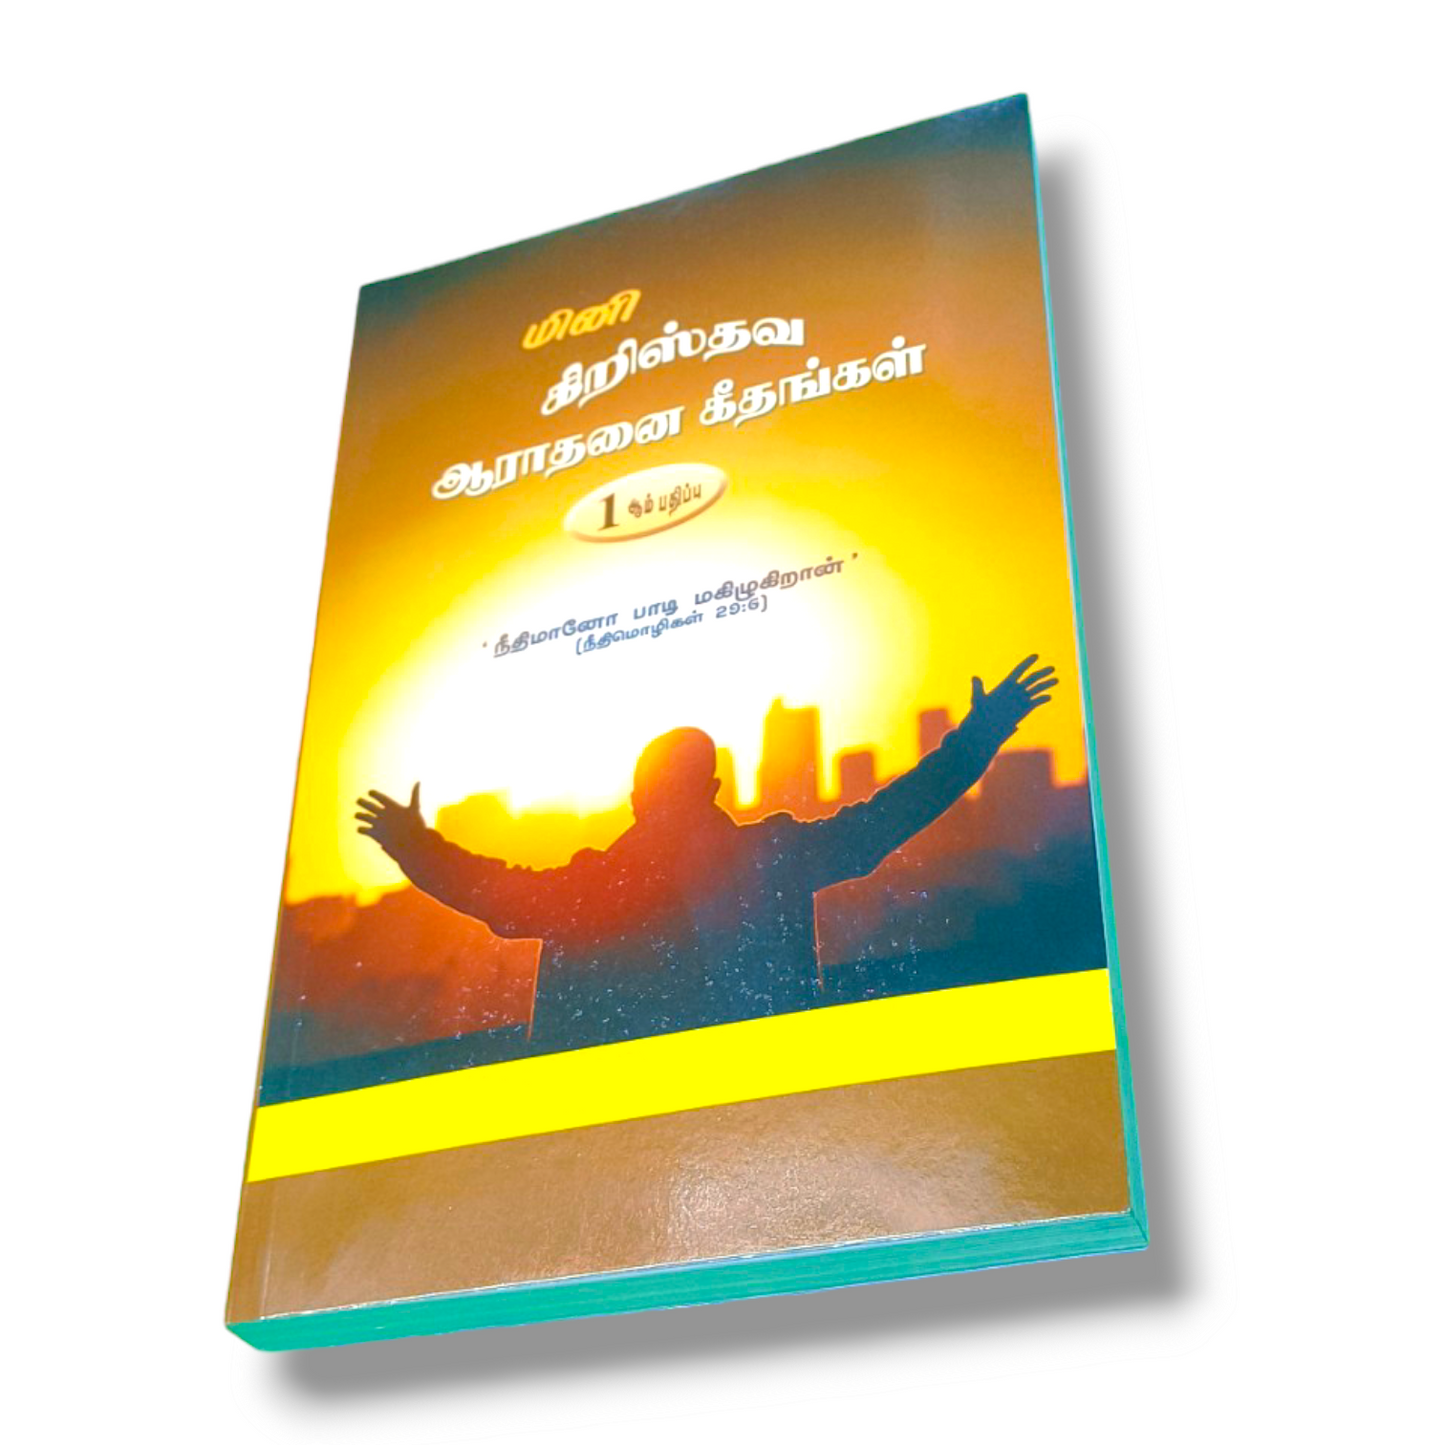 மினி கிறிஸ்தவ ஆராதனை கீதங்கள் | 1 ஆம் பதிப்ப | Tamil Song Book | Paper Bound Edition